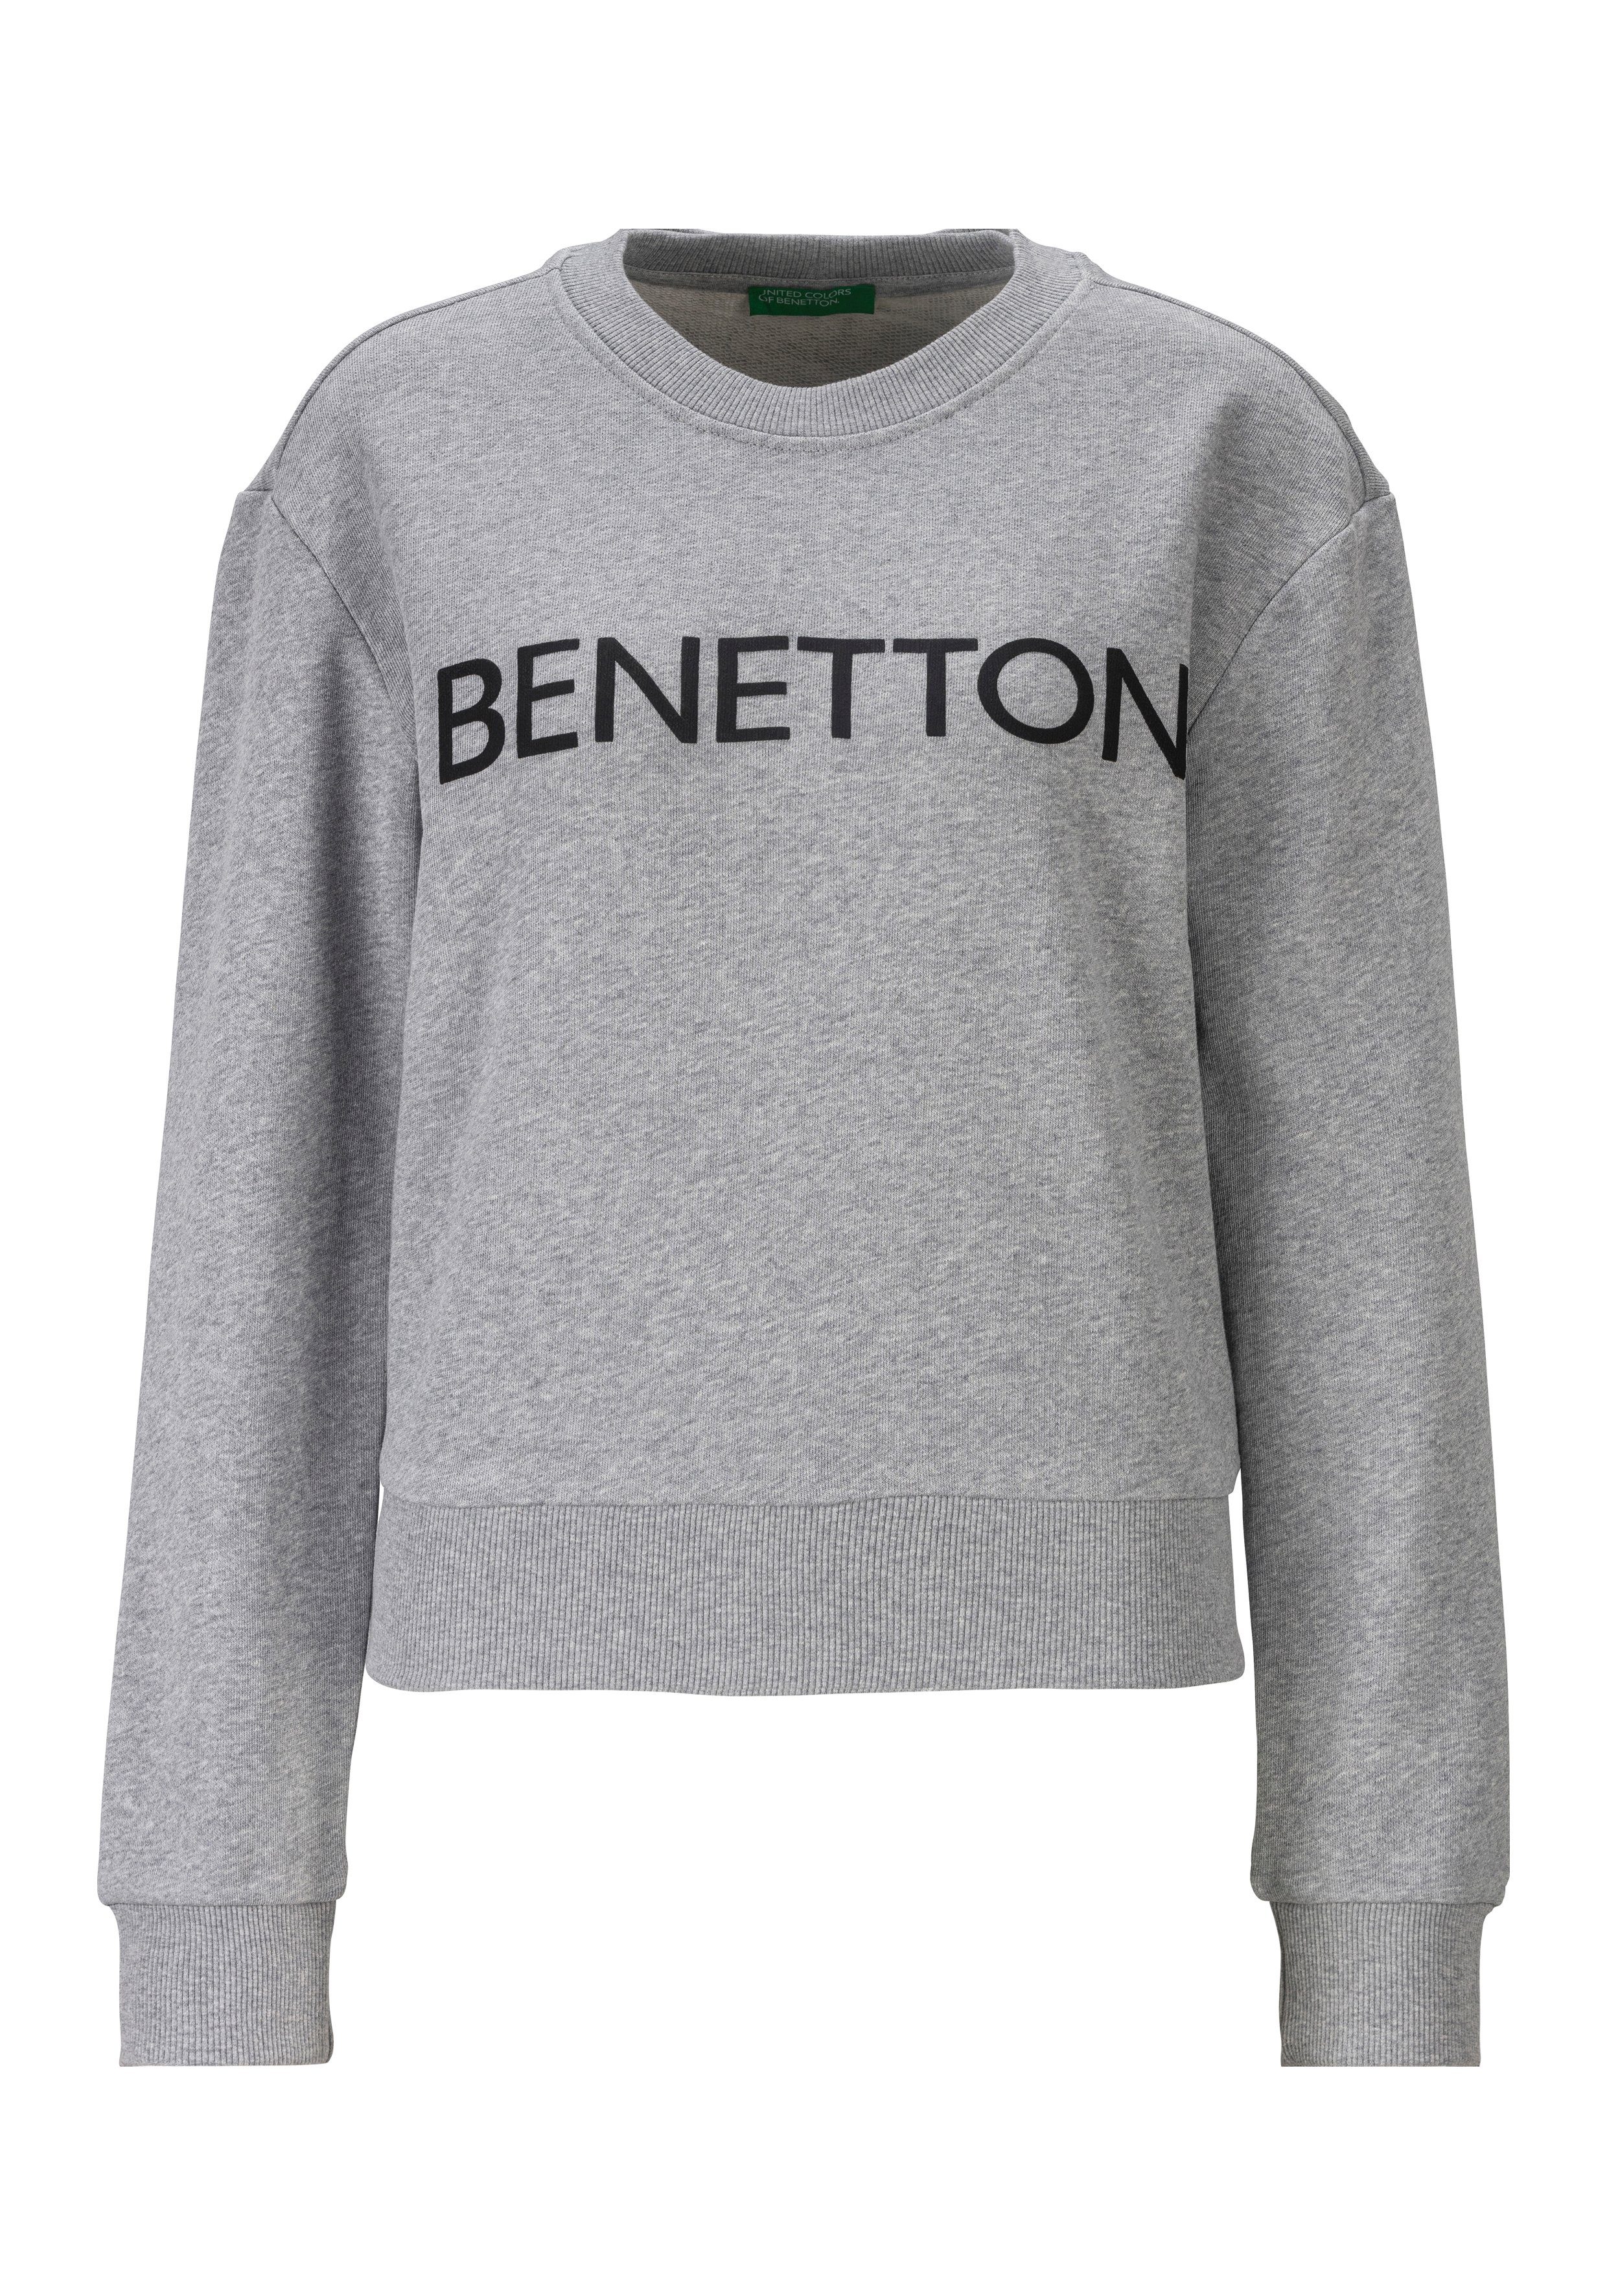 United Colors of Benetton Sweatshirt met benetton print